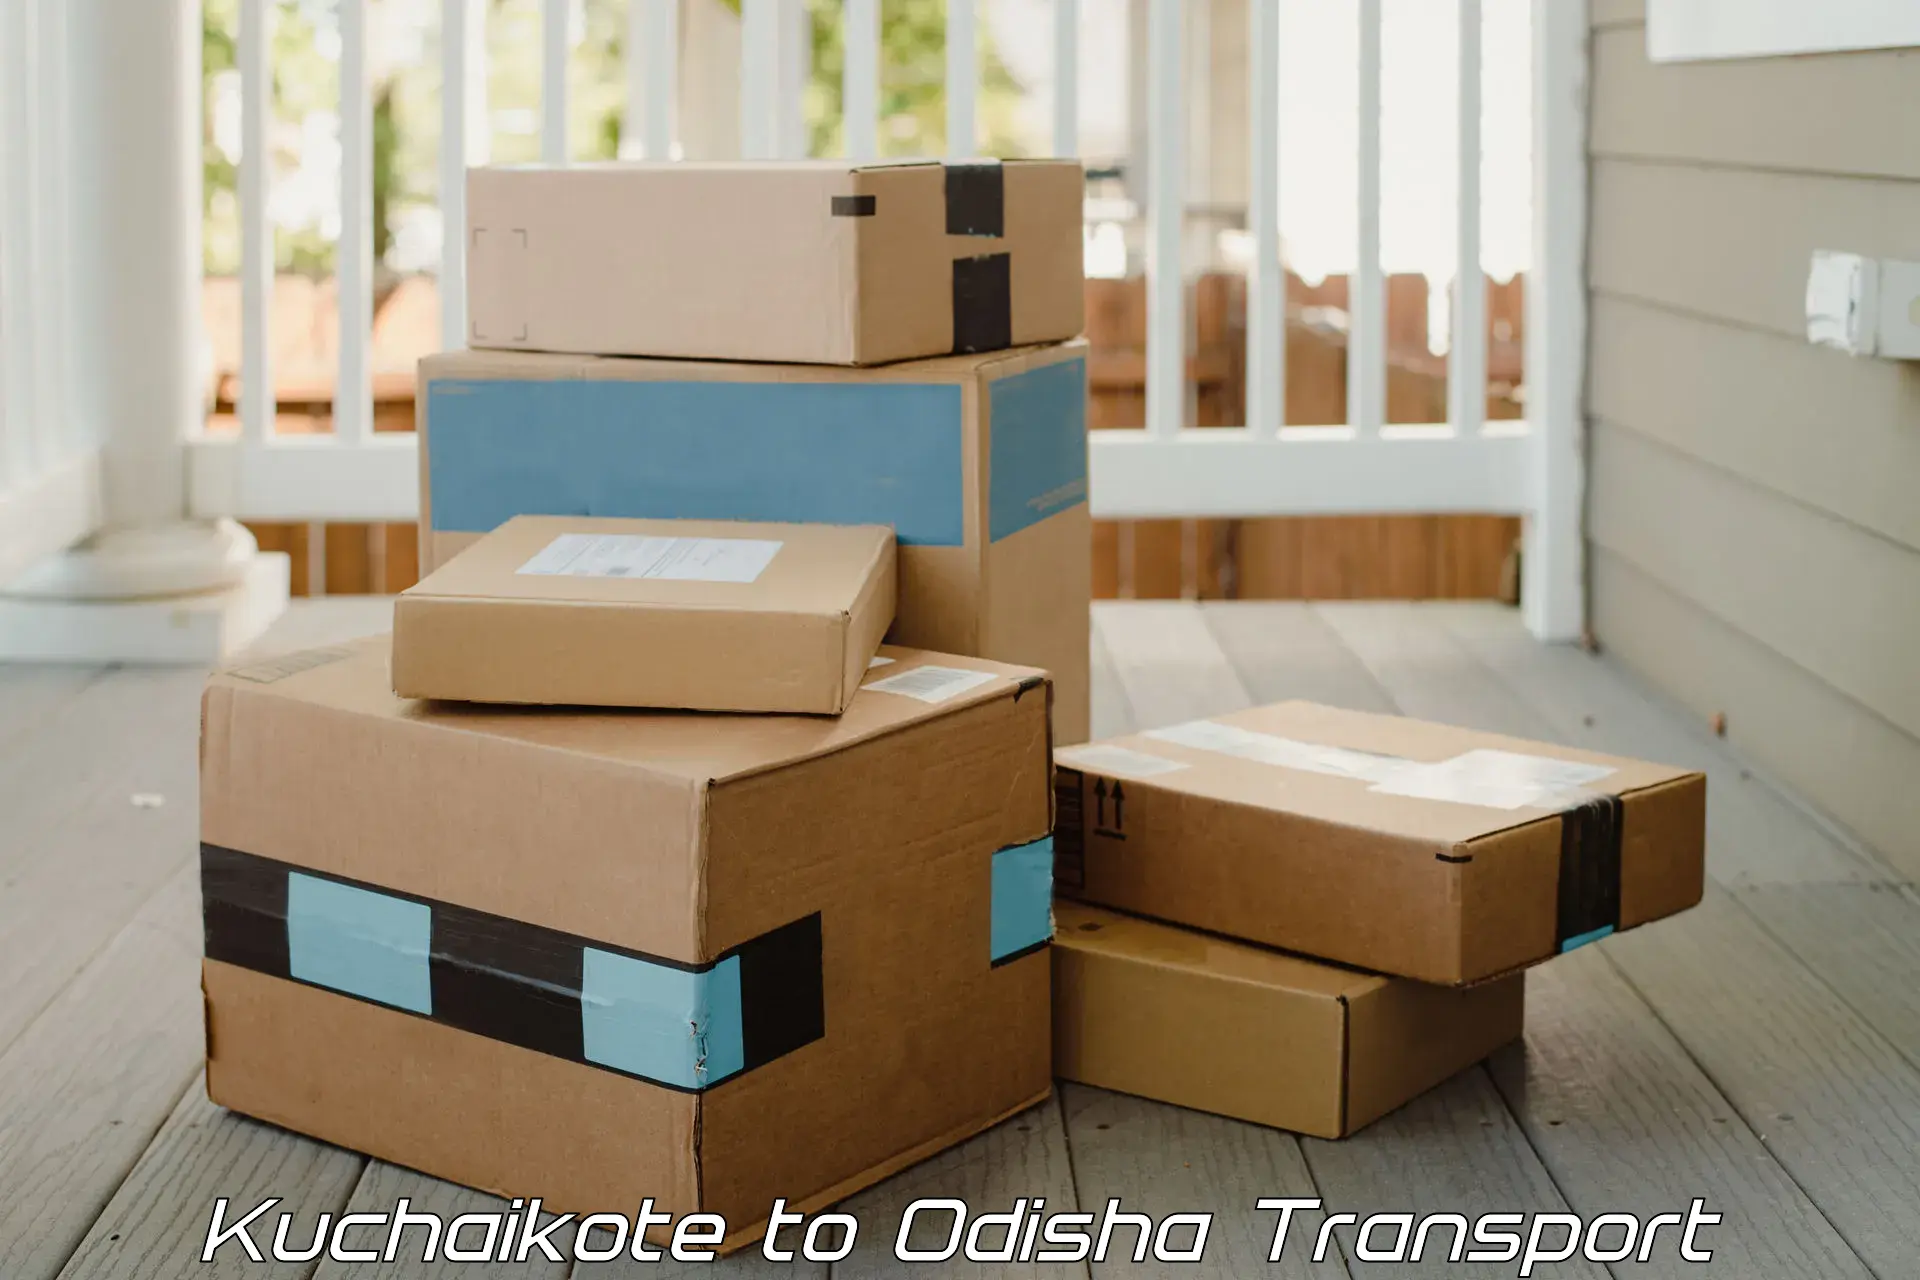 India truck logistics services Kuchaikote to Khariaguda